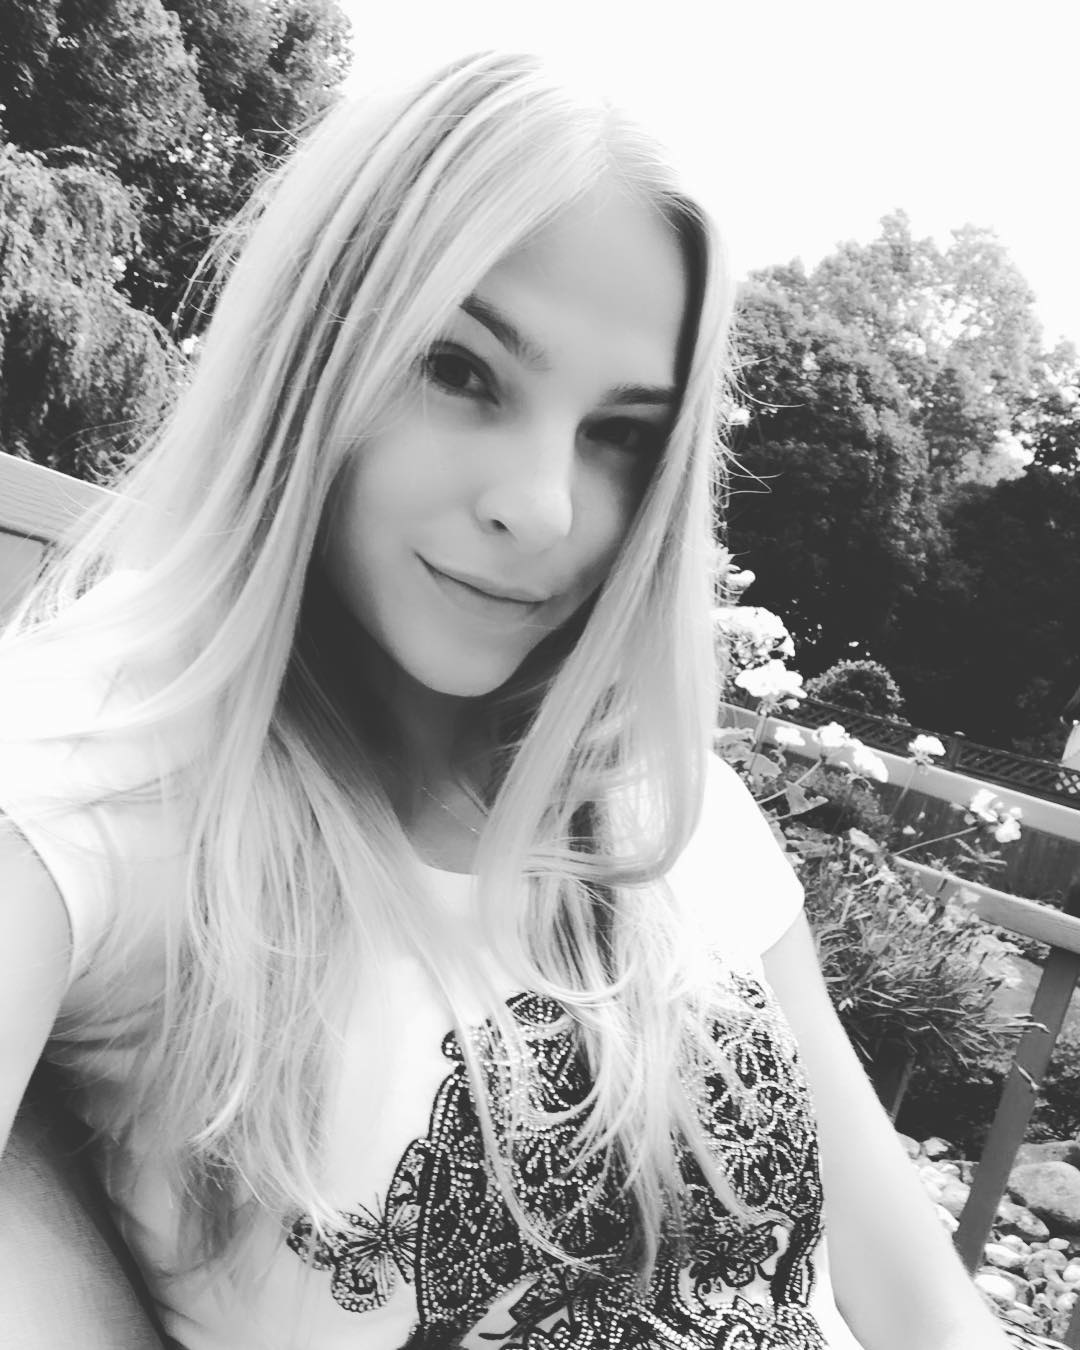 Дарья Клишина опубликовала новое фото в Instagram